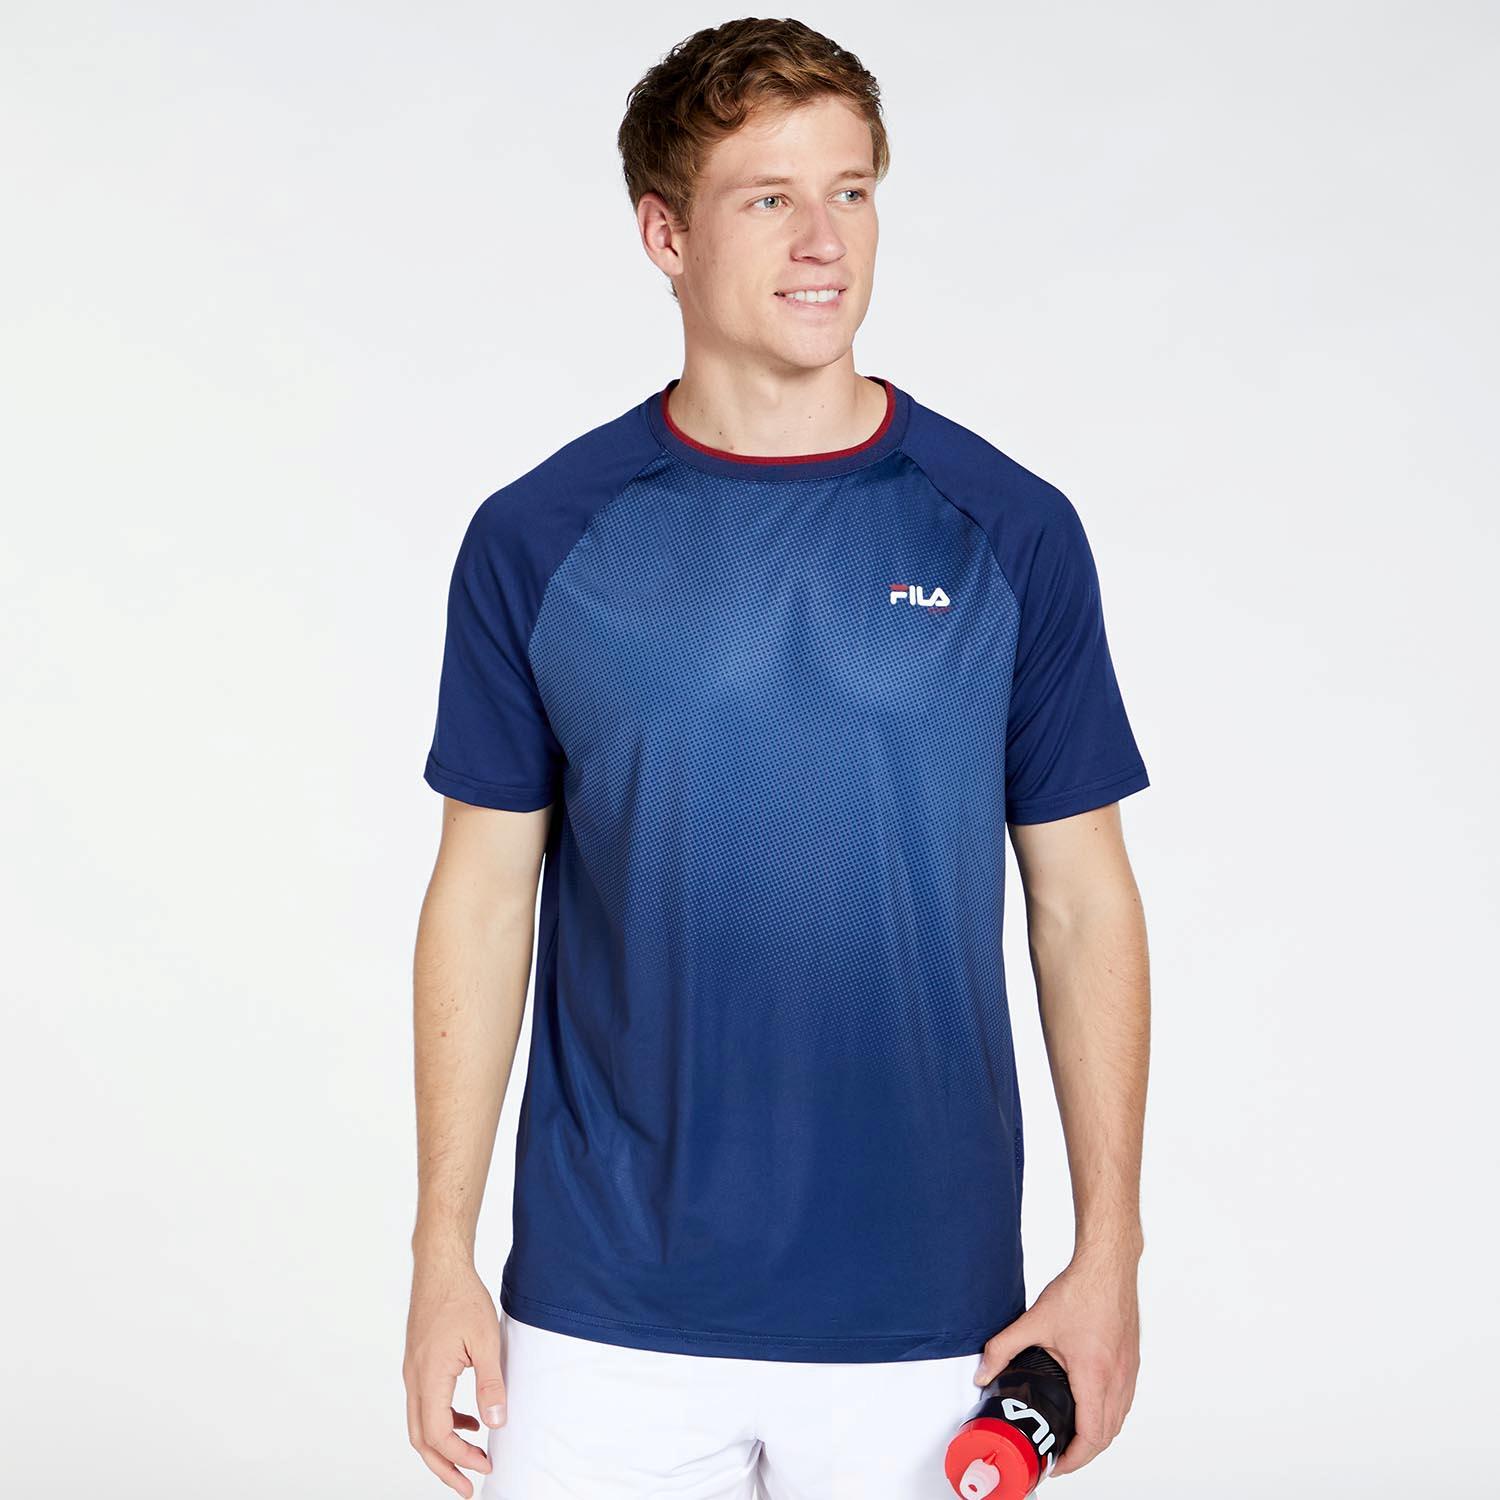 Fila T-shirt Marineblauw Tennisshirt Heren